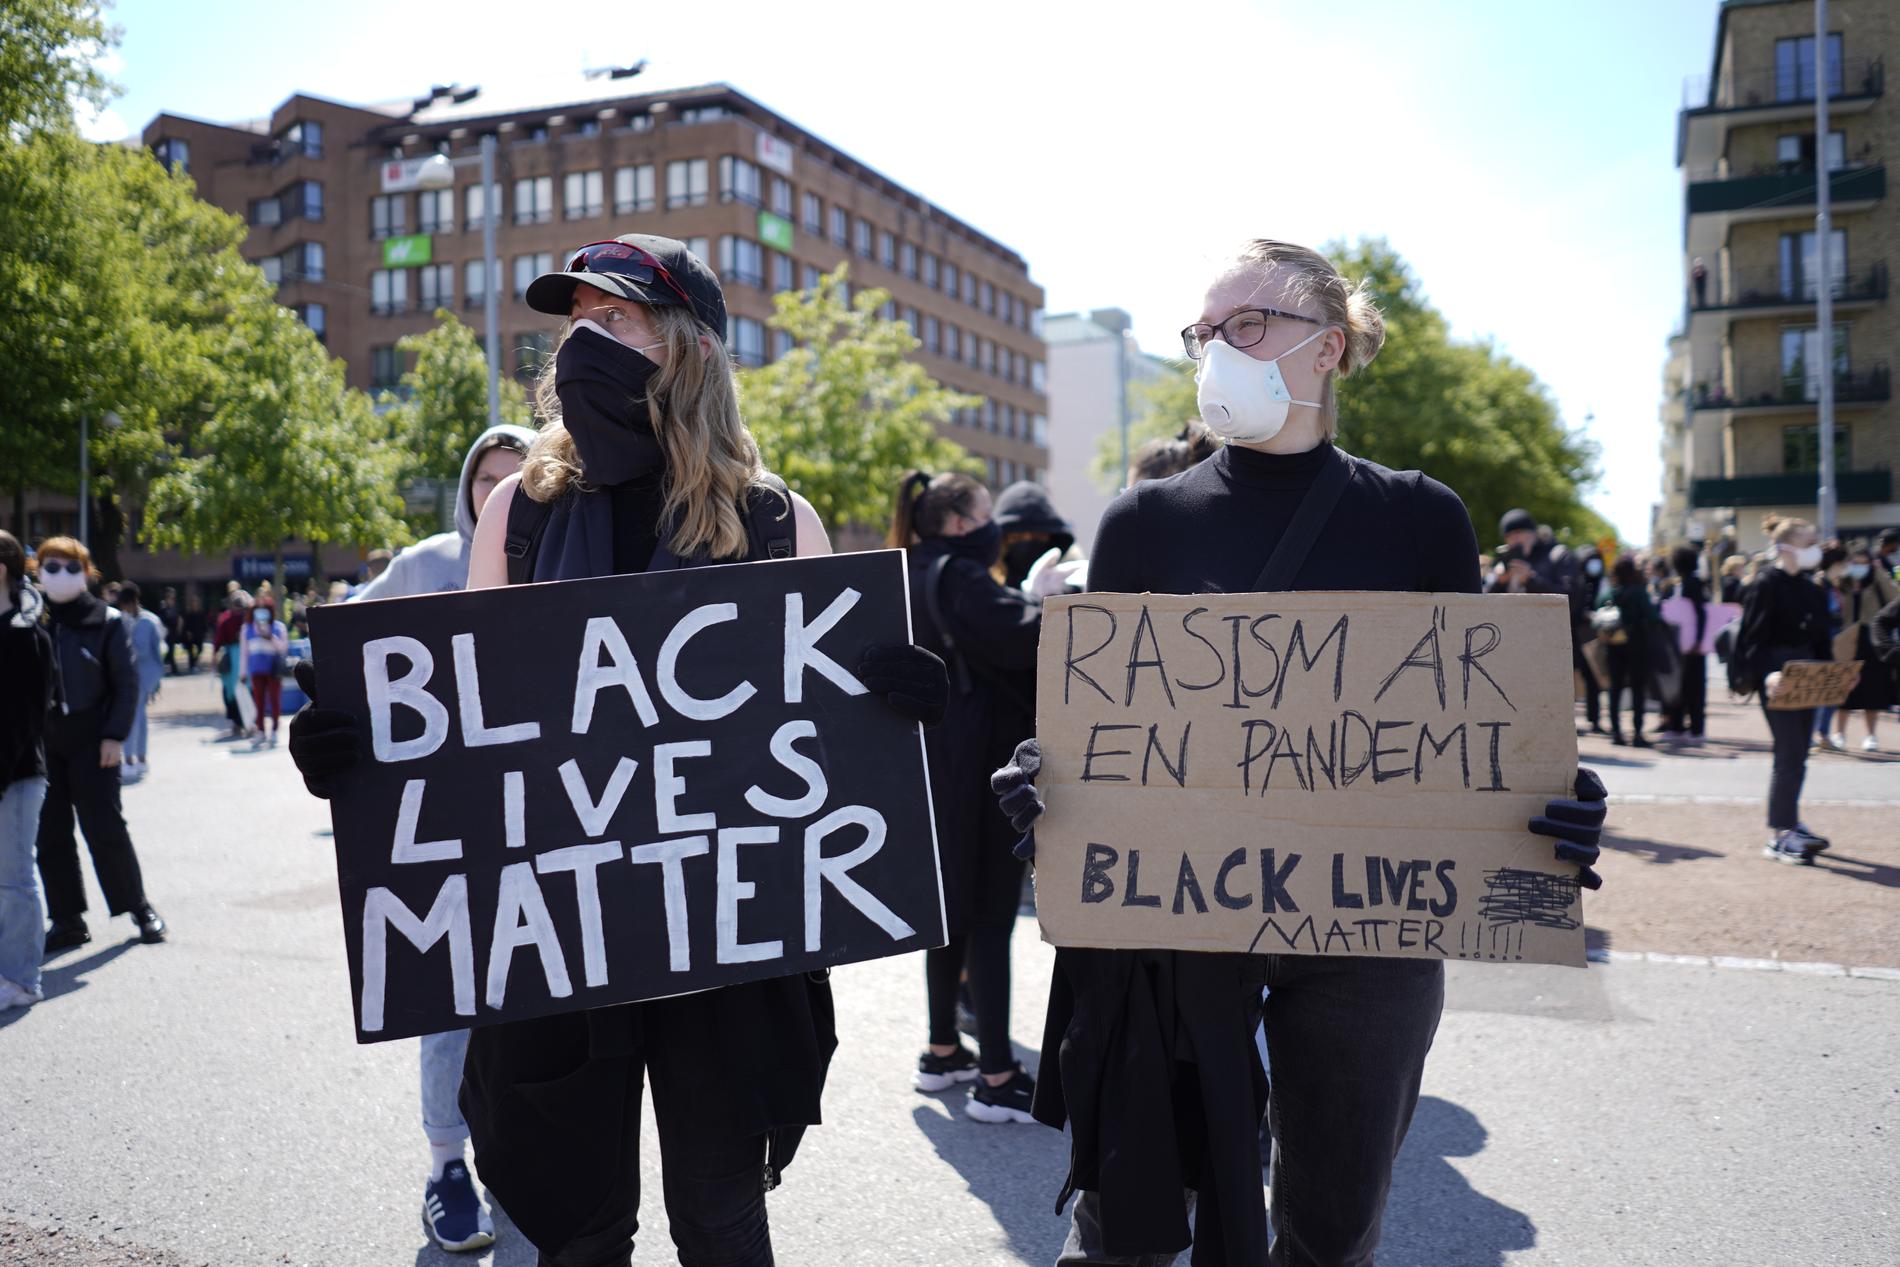 Efter demonstrationer världen över med stora samlingar i både Stockholm Malmö har protesterna mot rasism och polisbrutalitet nu nått Göteborg.